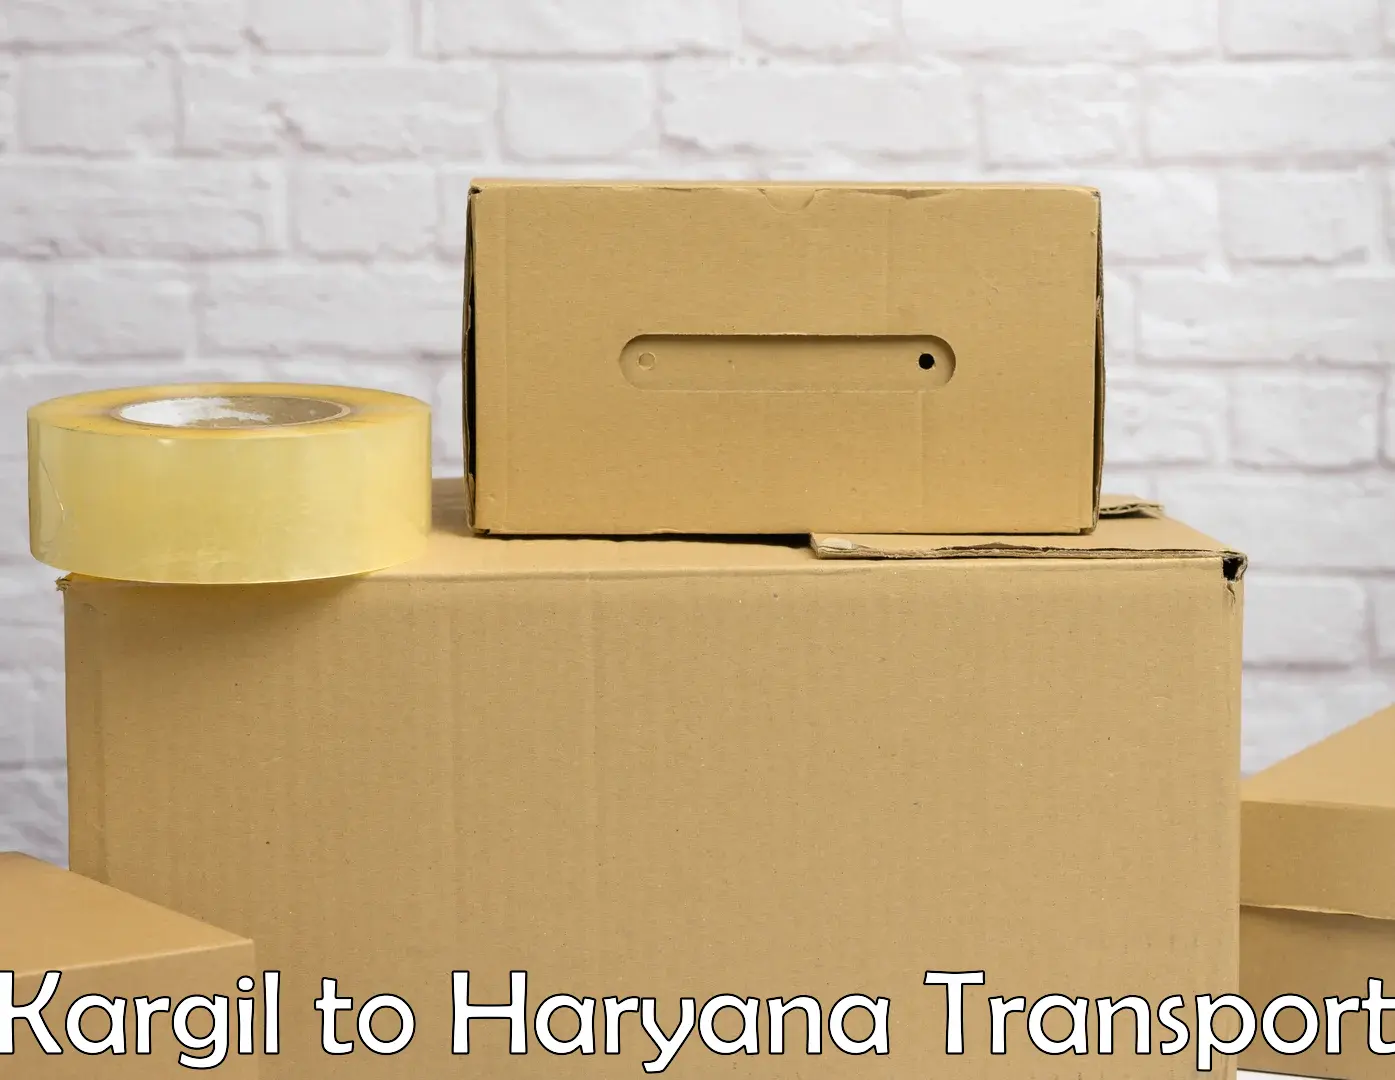 Two wheeler parcel service Kargil to NCR Haryana